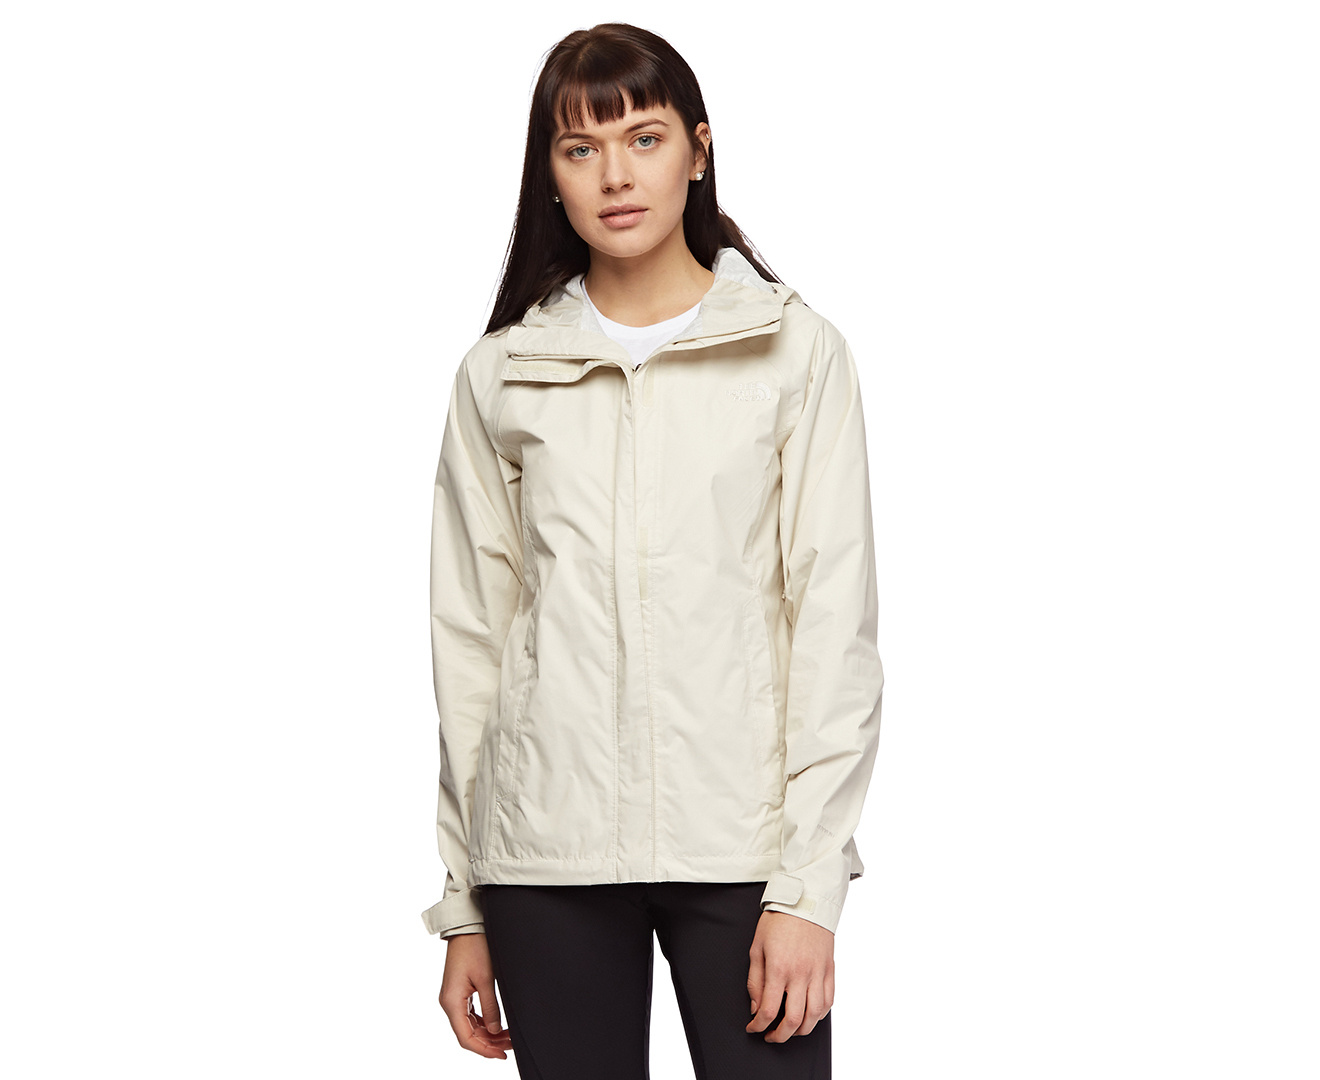 The North Face Women's Venture Jacket - Vintage white | Catch.com.au